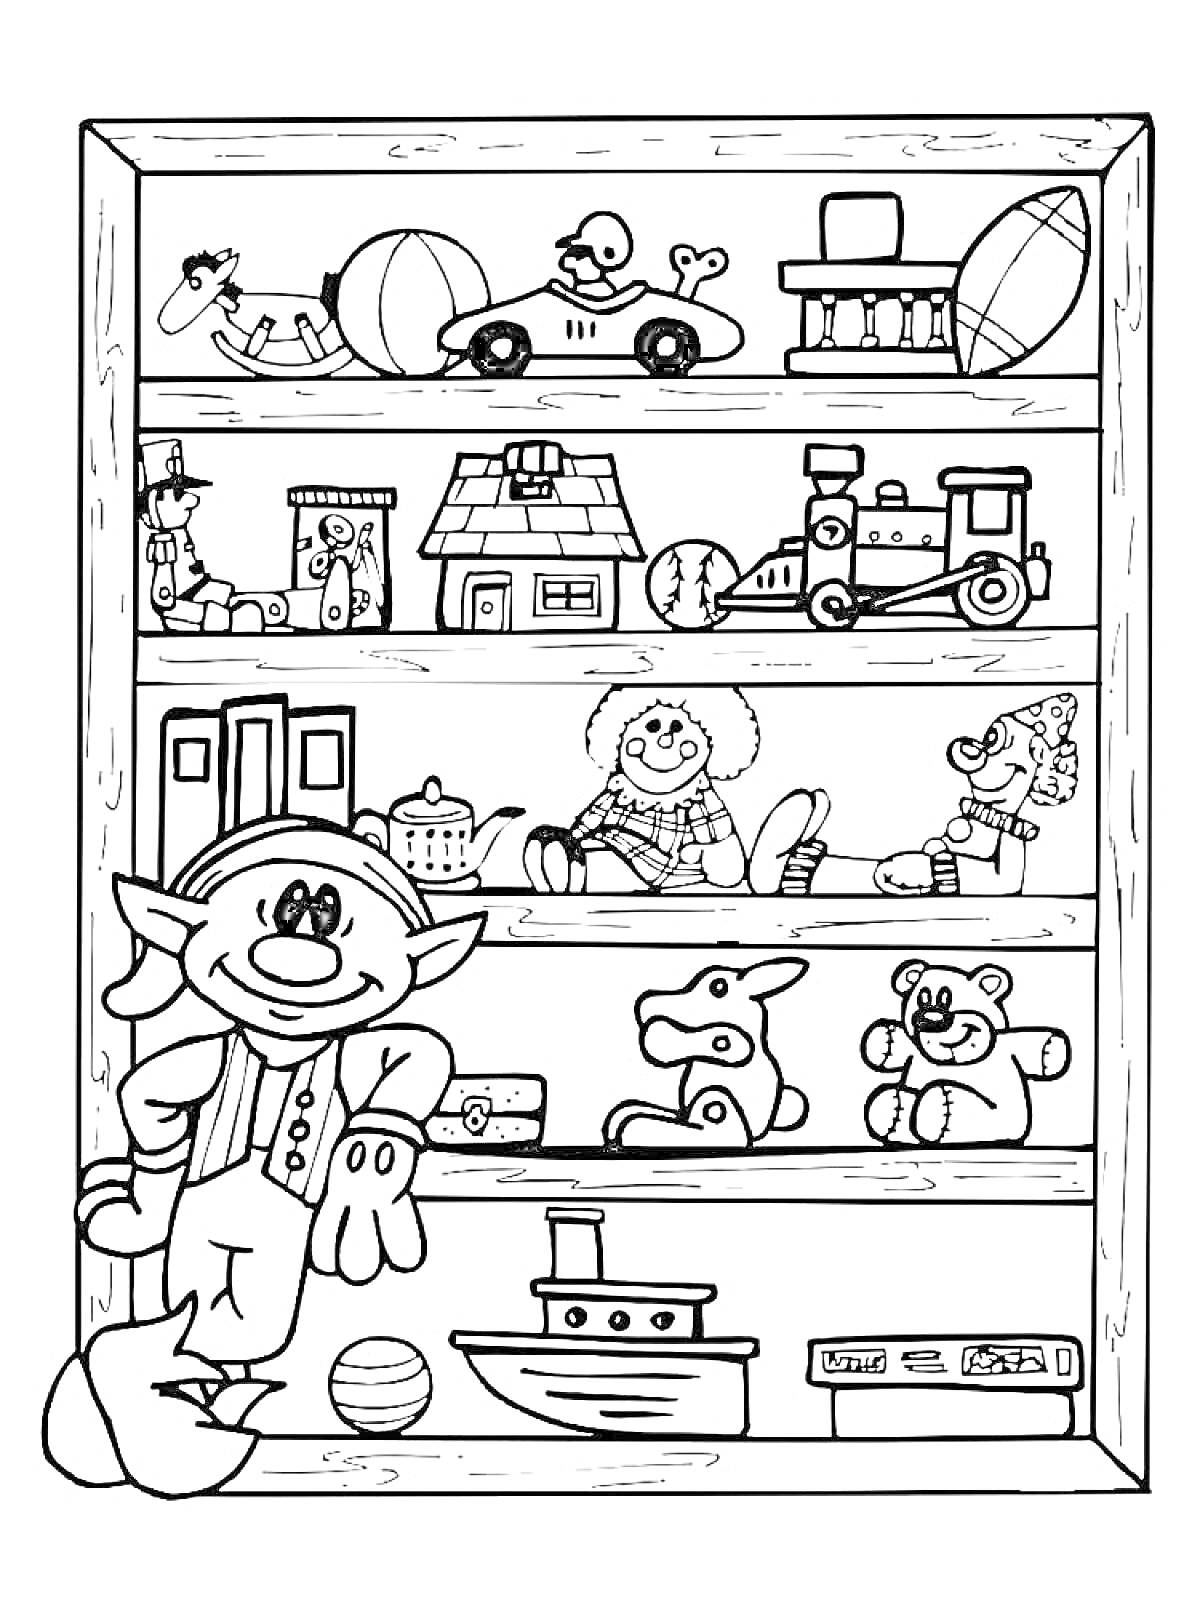 Раскраска Магазин игрушек с полками, игрушками, человечком в шляпе и игрушечным корабликом